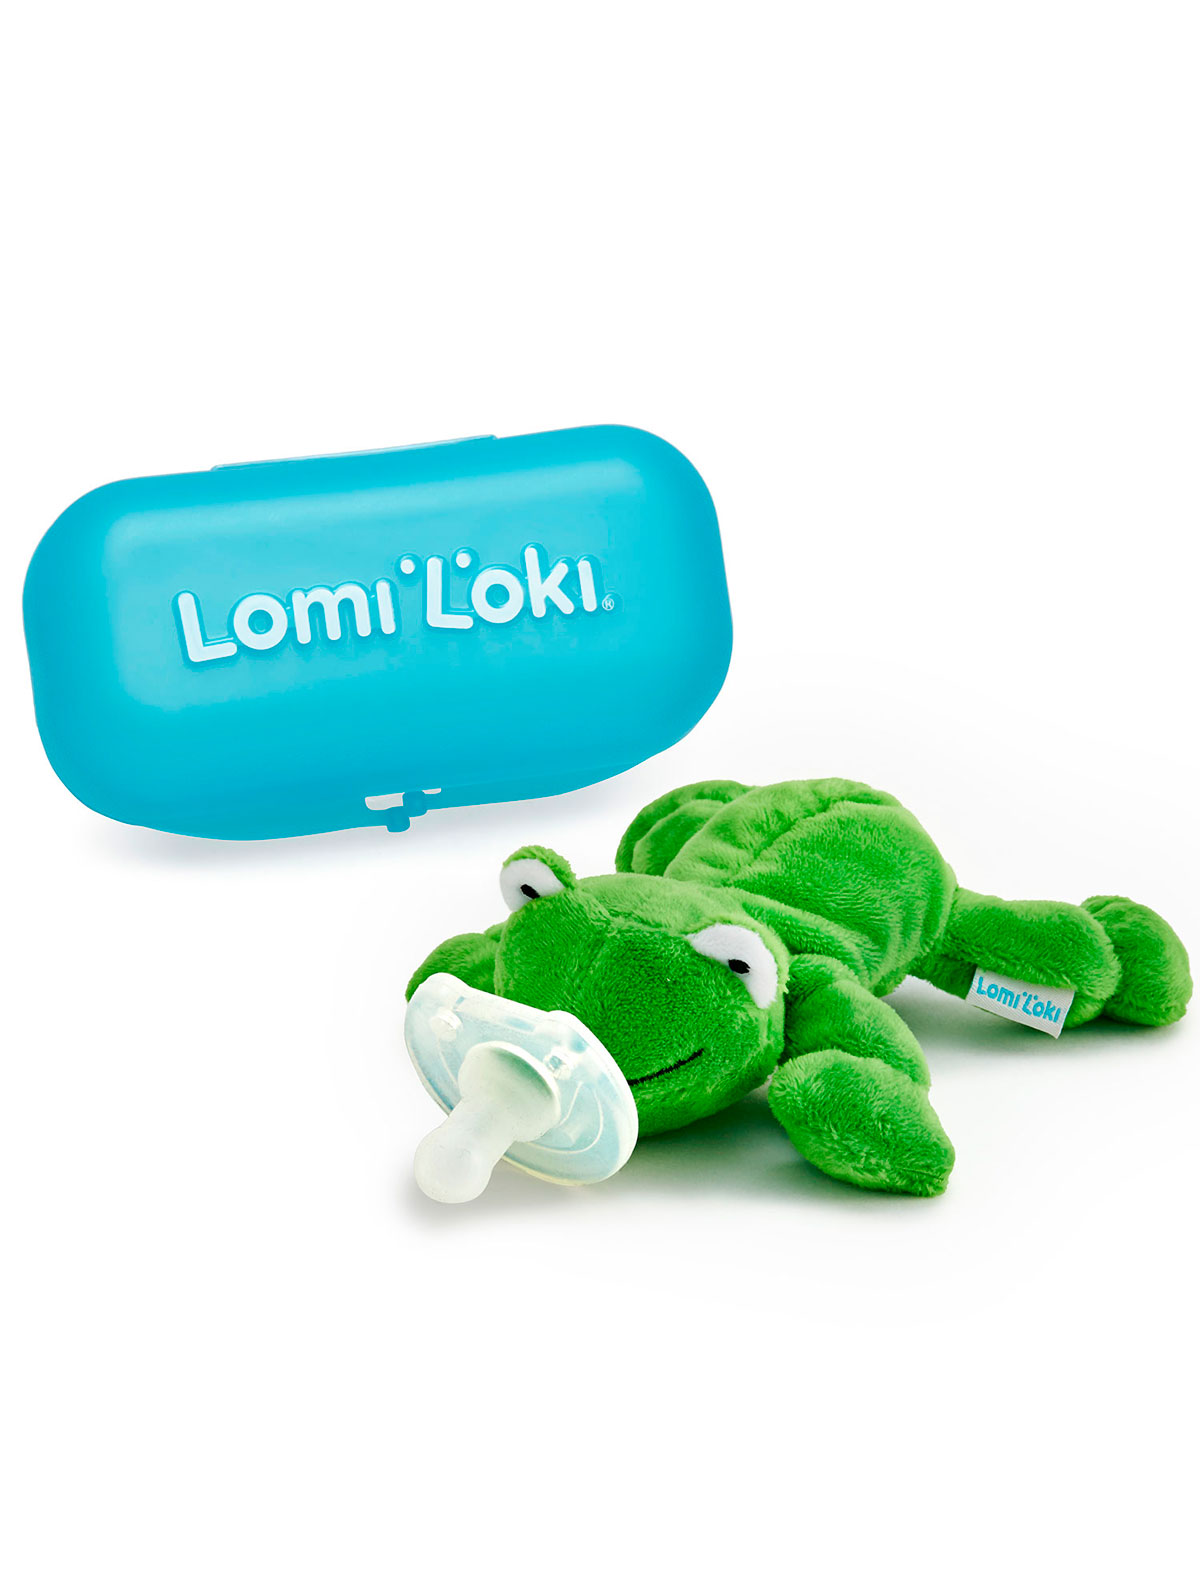 Соска Lomi Loki